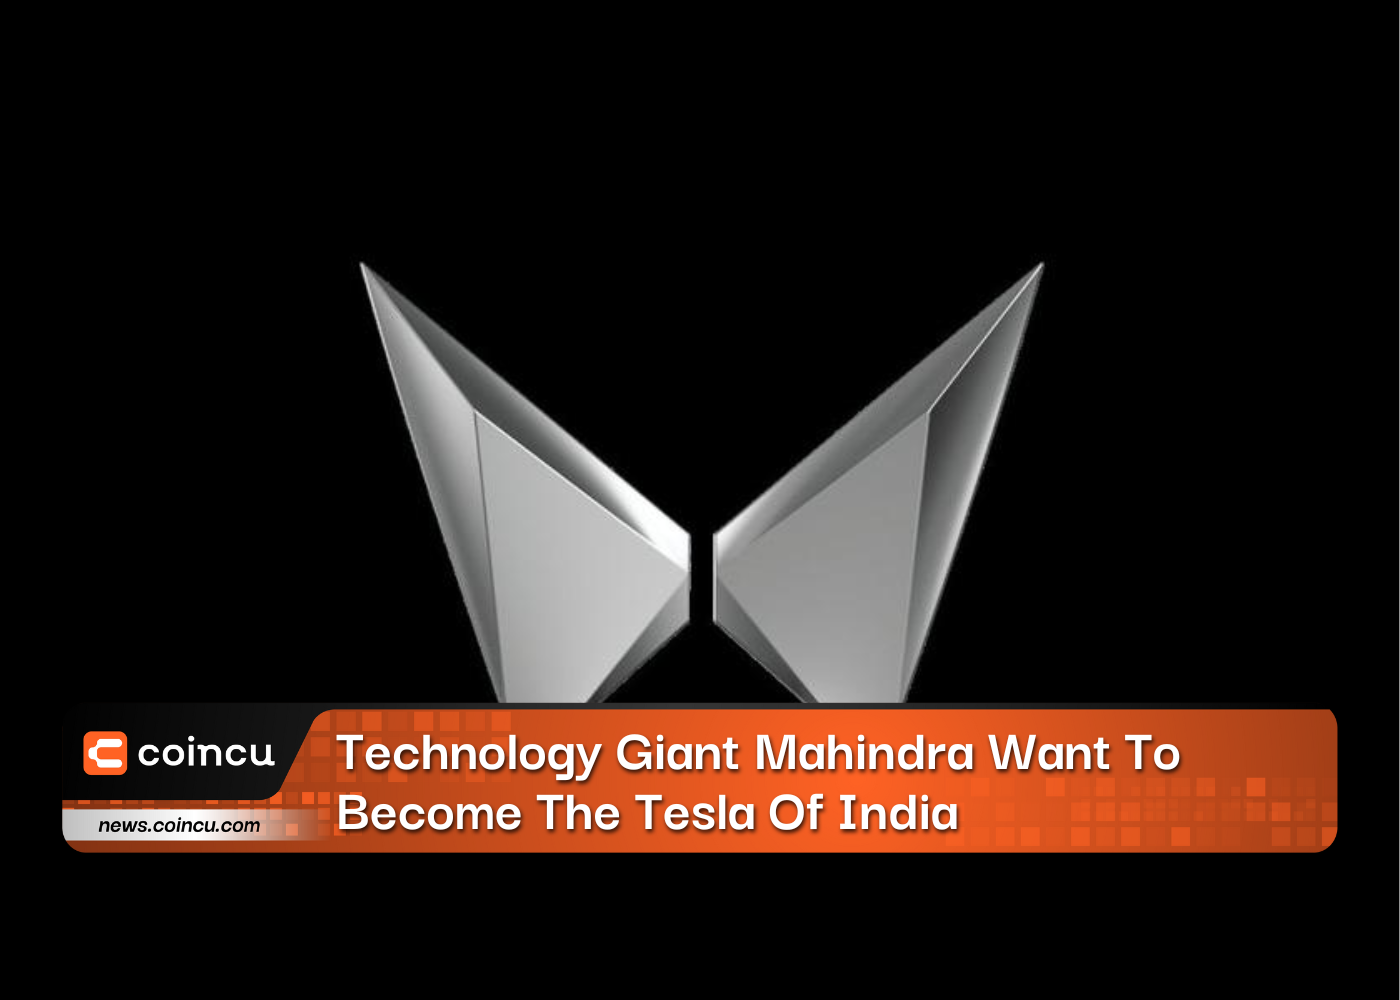 Le géant de la technologie Mahindra veut devenir la Tesla de l'Inde